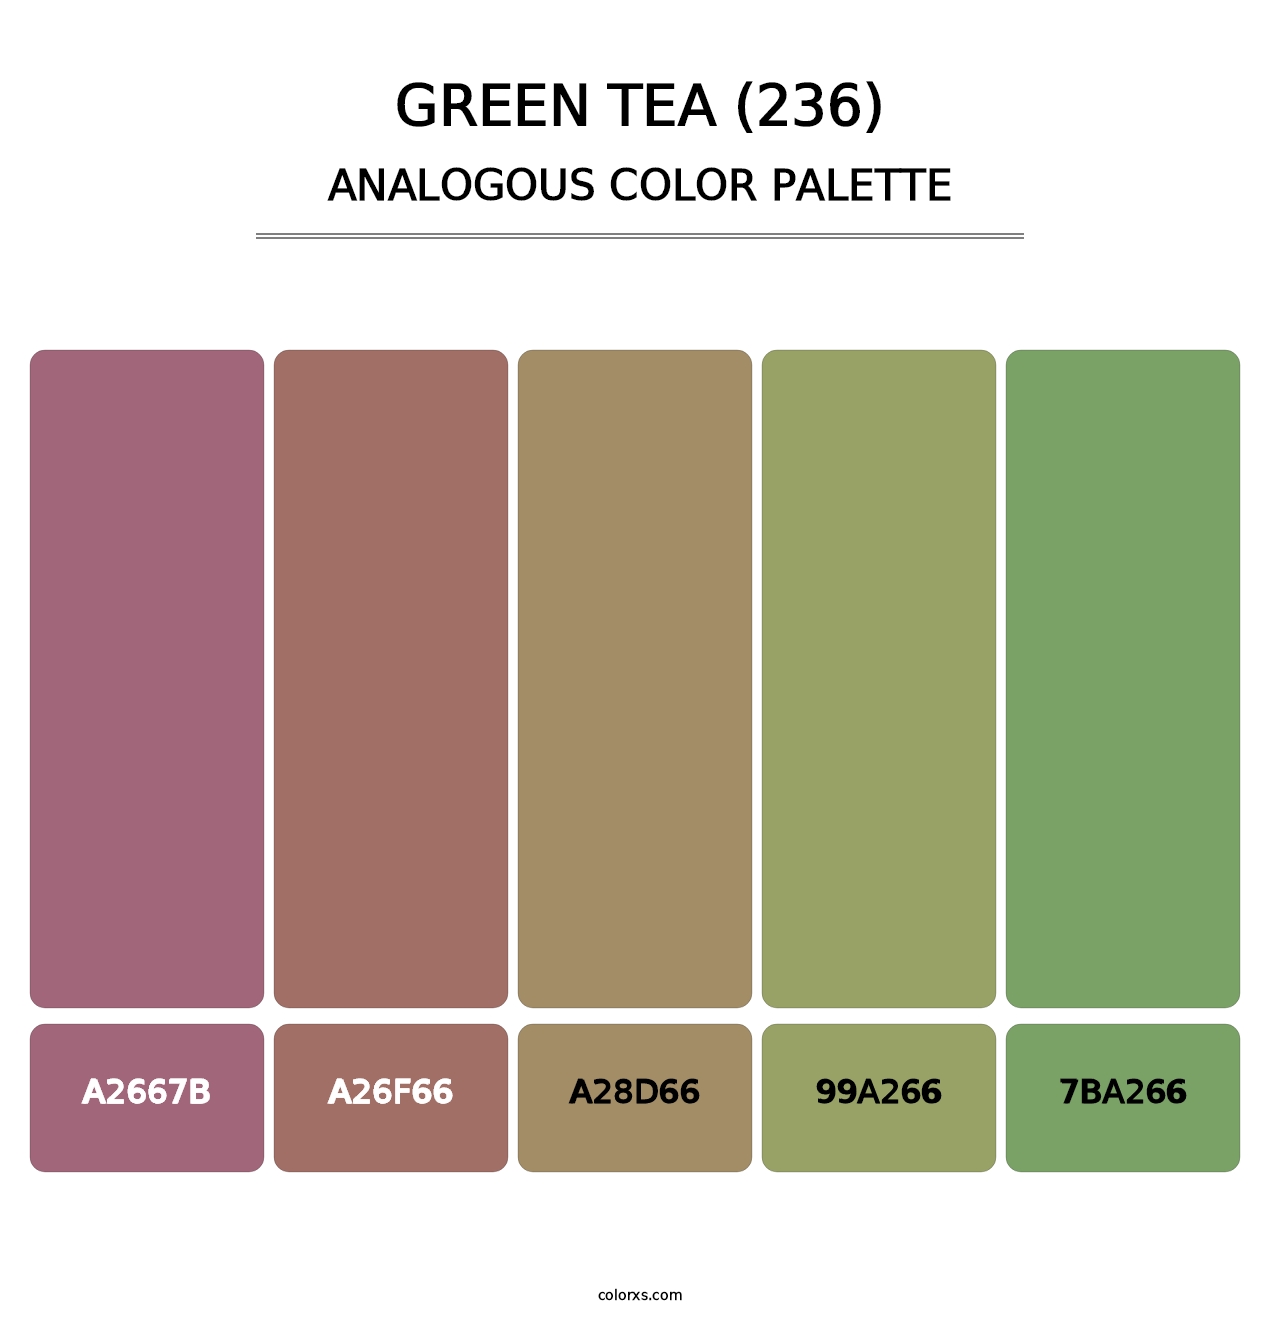 Green Tea (236) - Analogous Color Palette